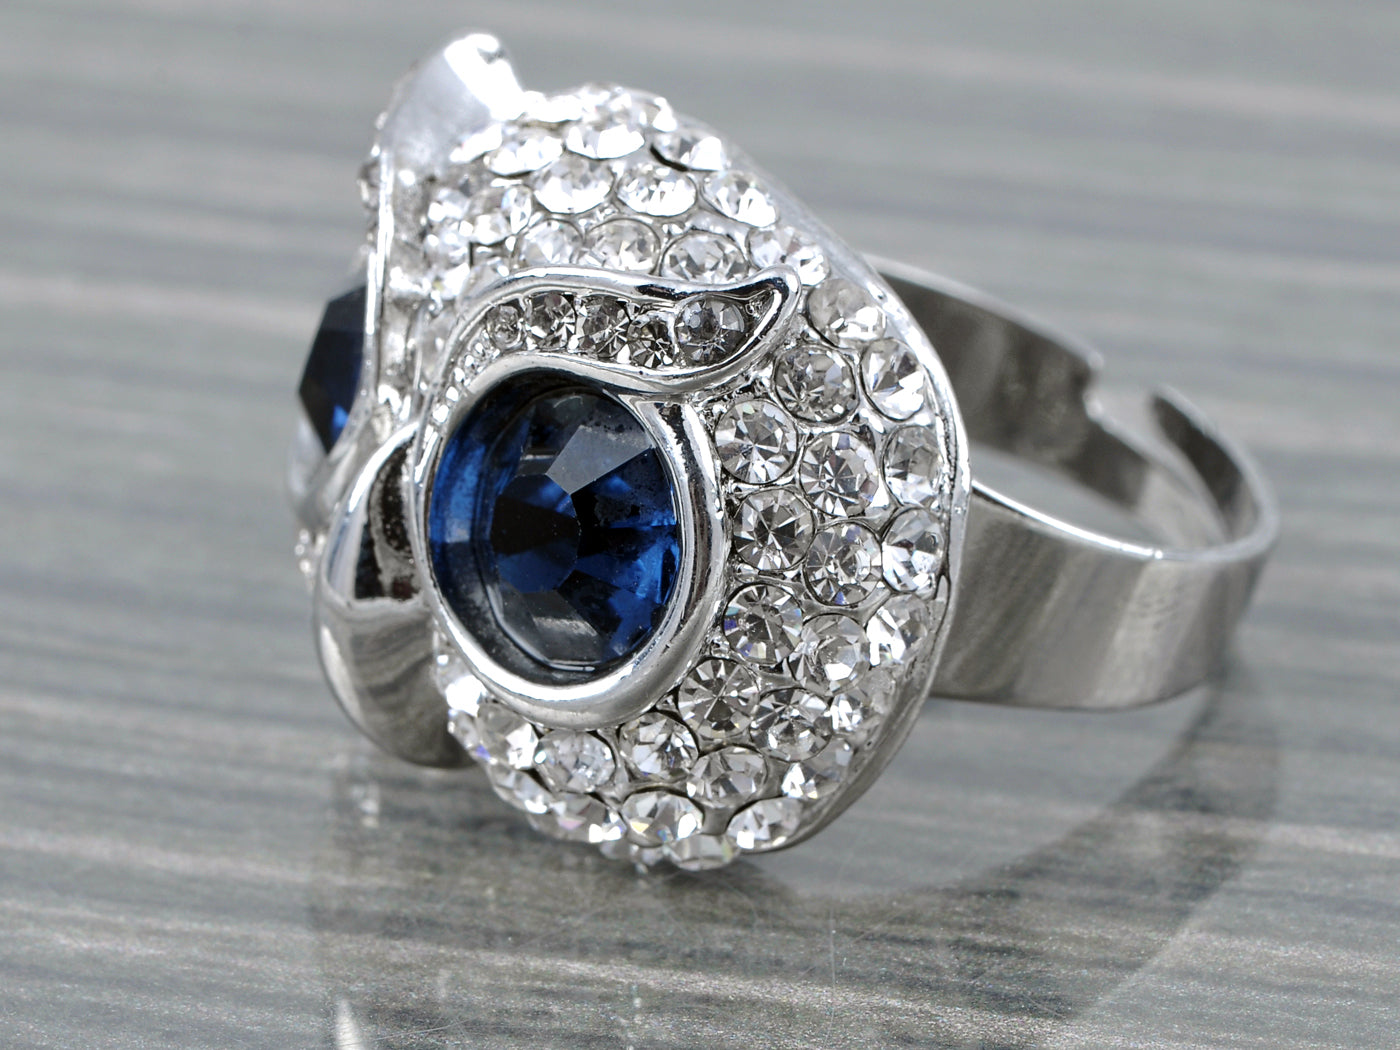 Dark Blue Gems Big Eyed Wise Owl Head Ring